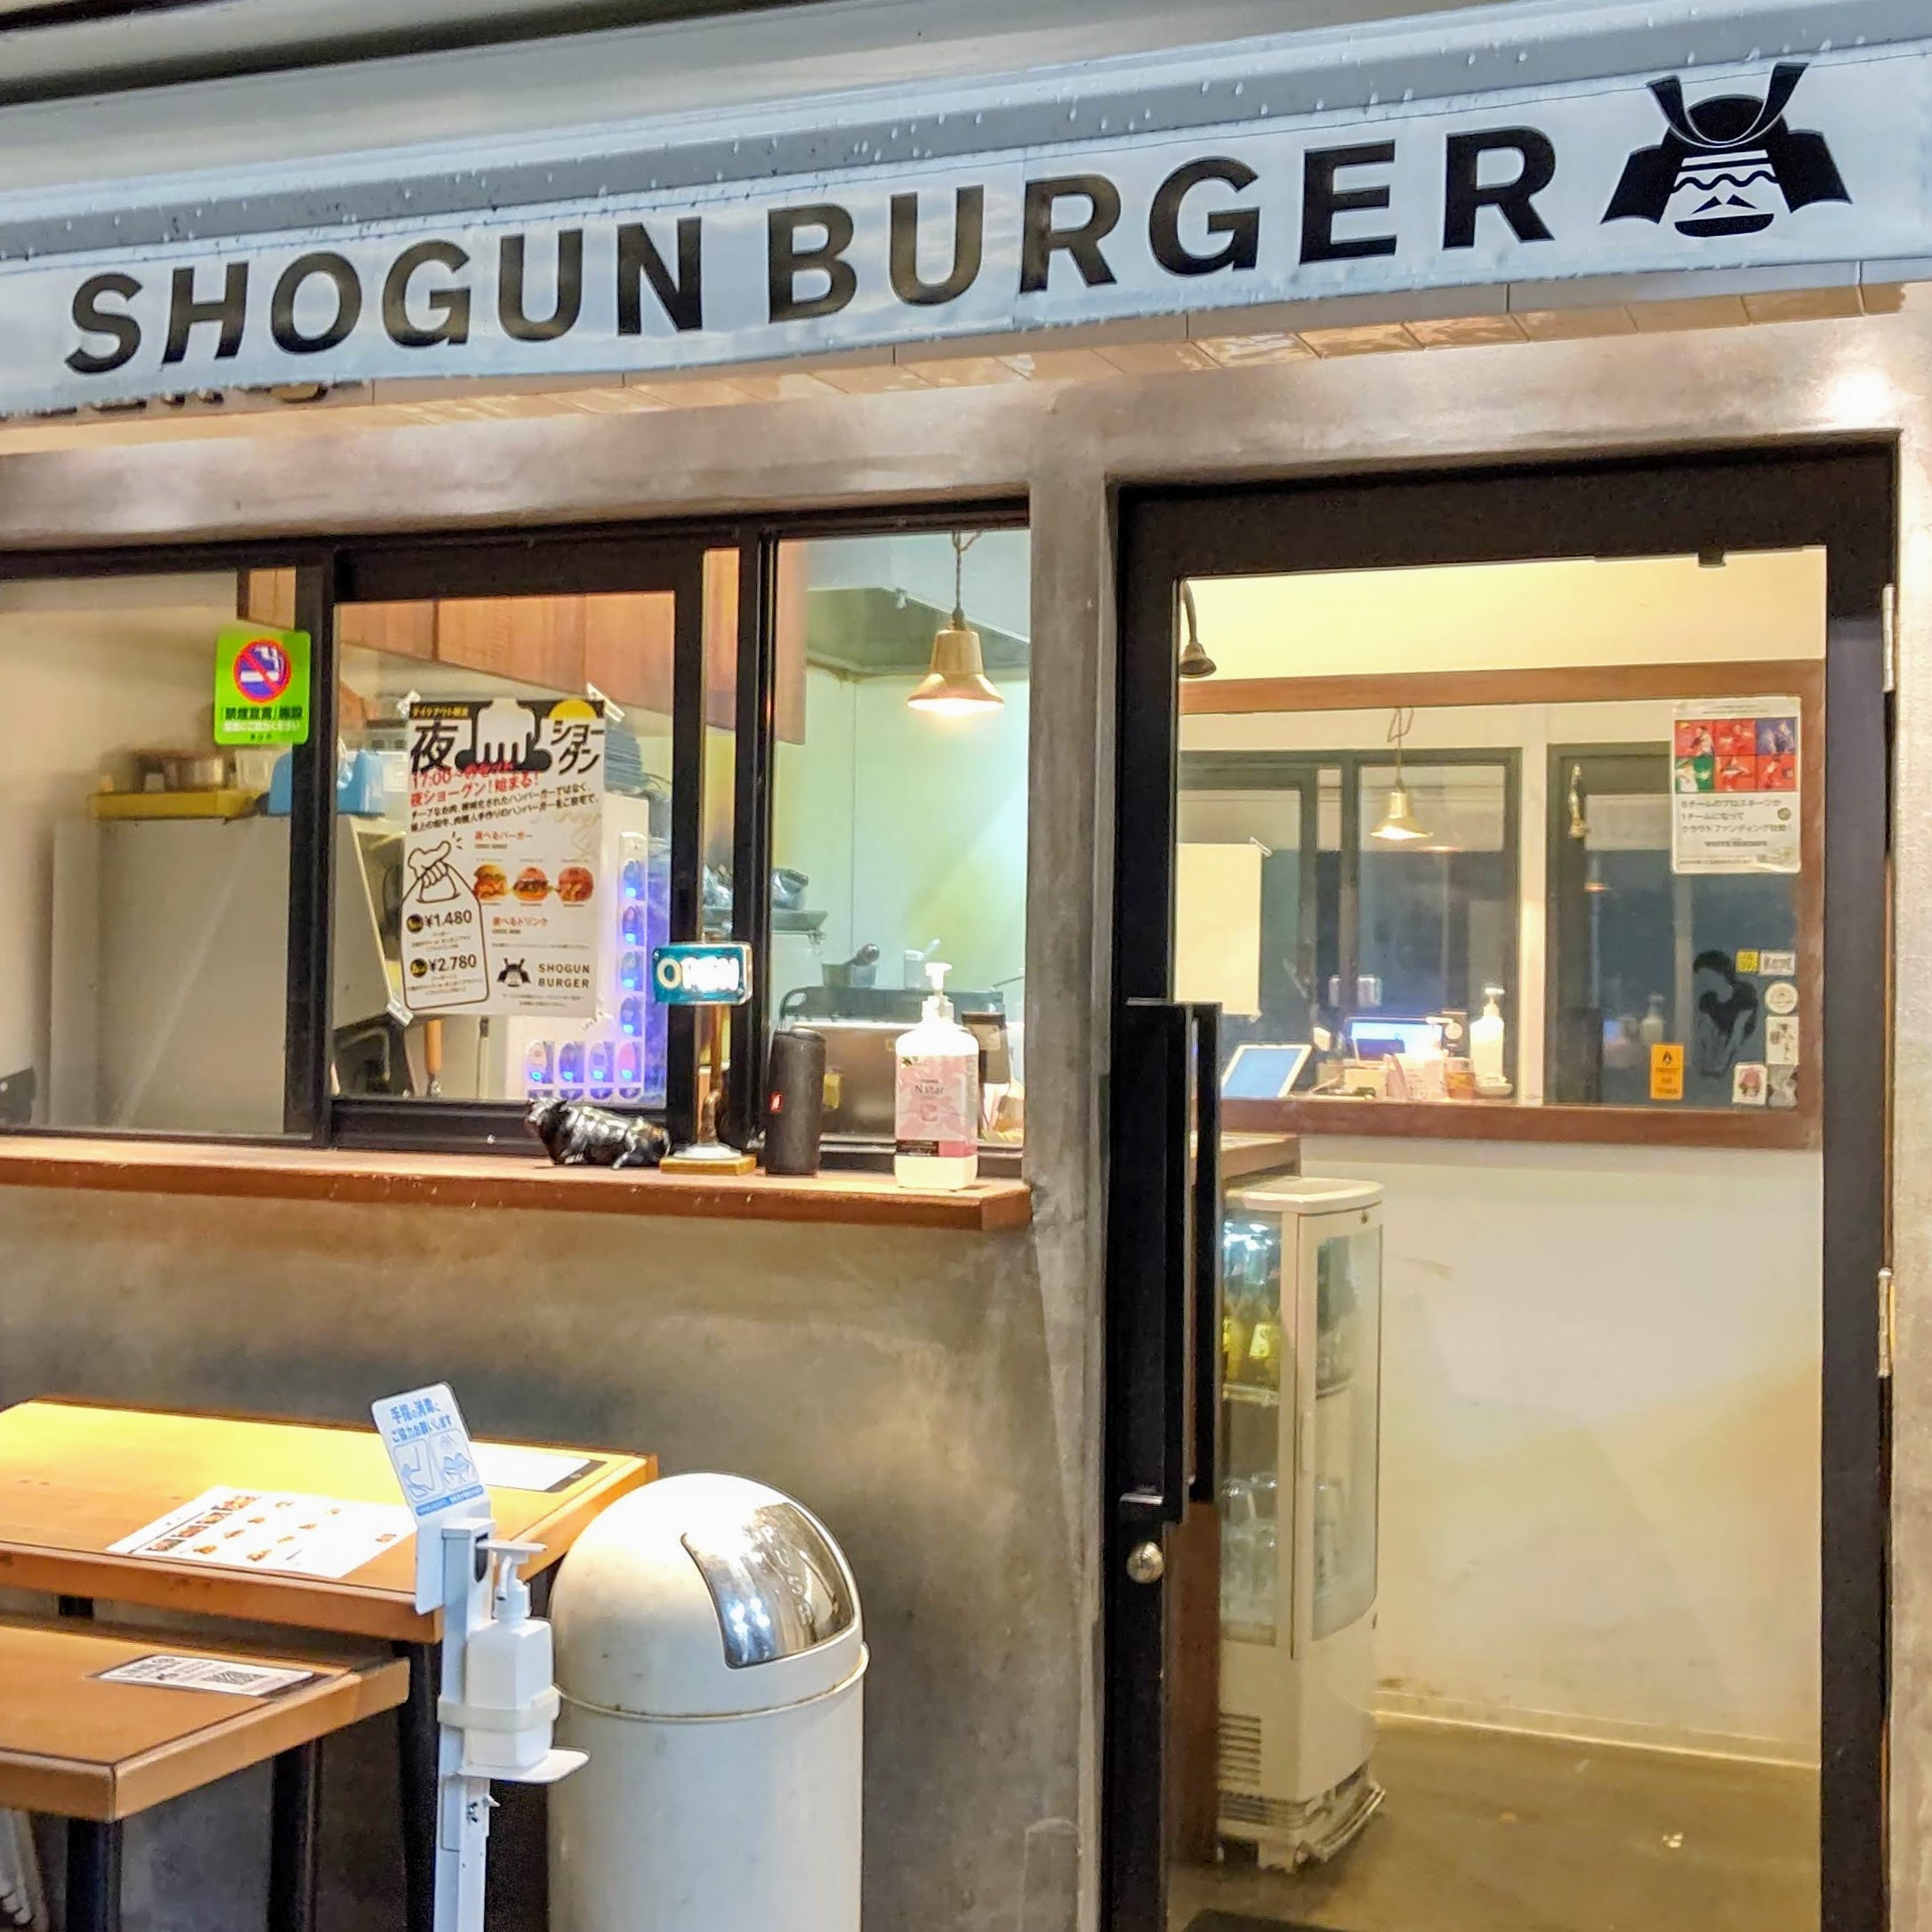 SHOGUN BURGER TOYAMA ショーグンバーガー 富山店 入口